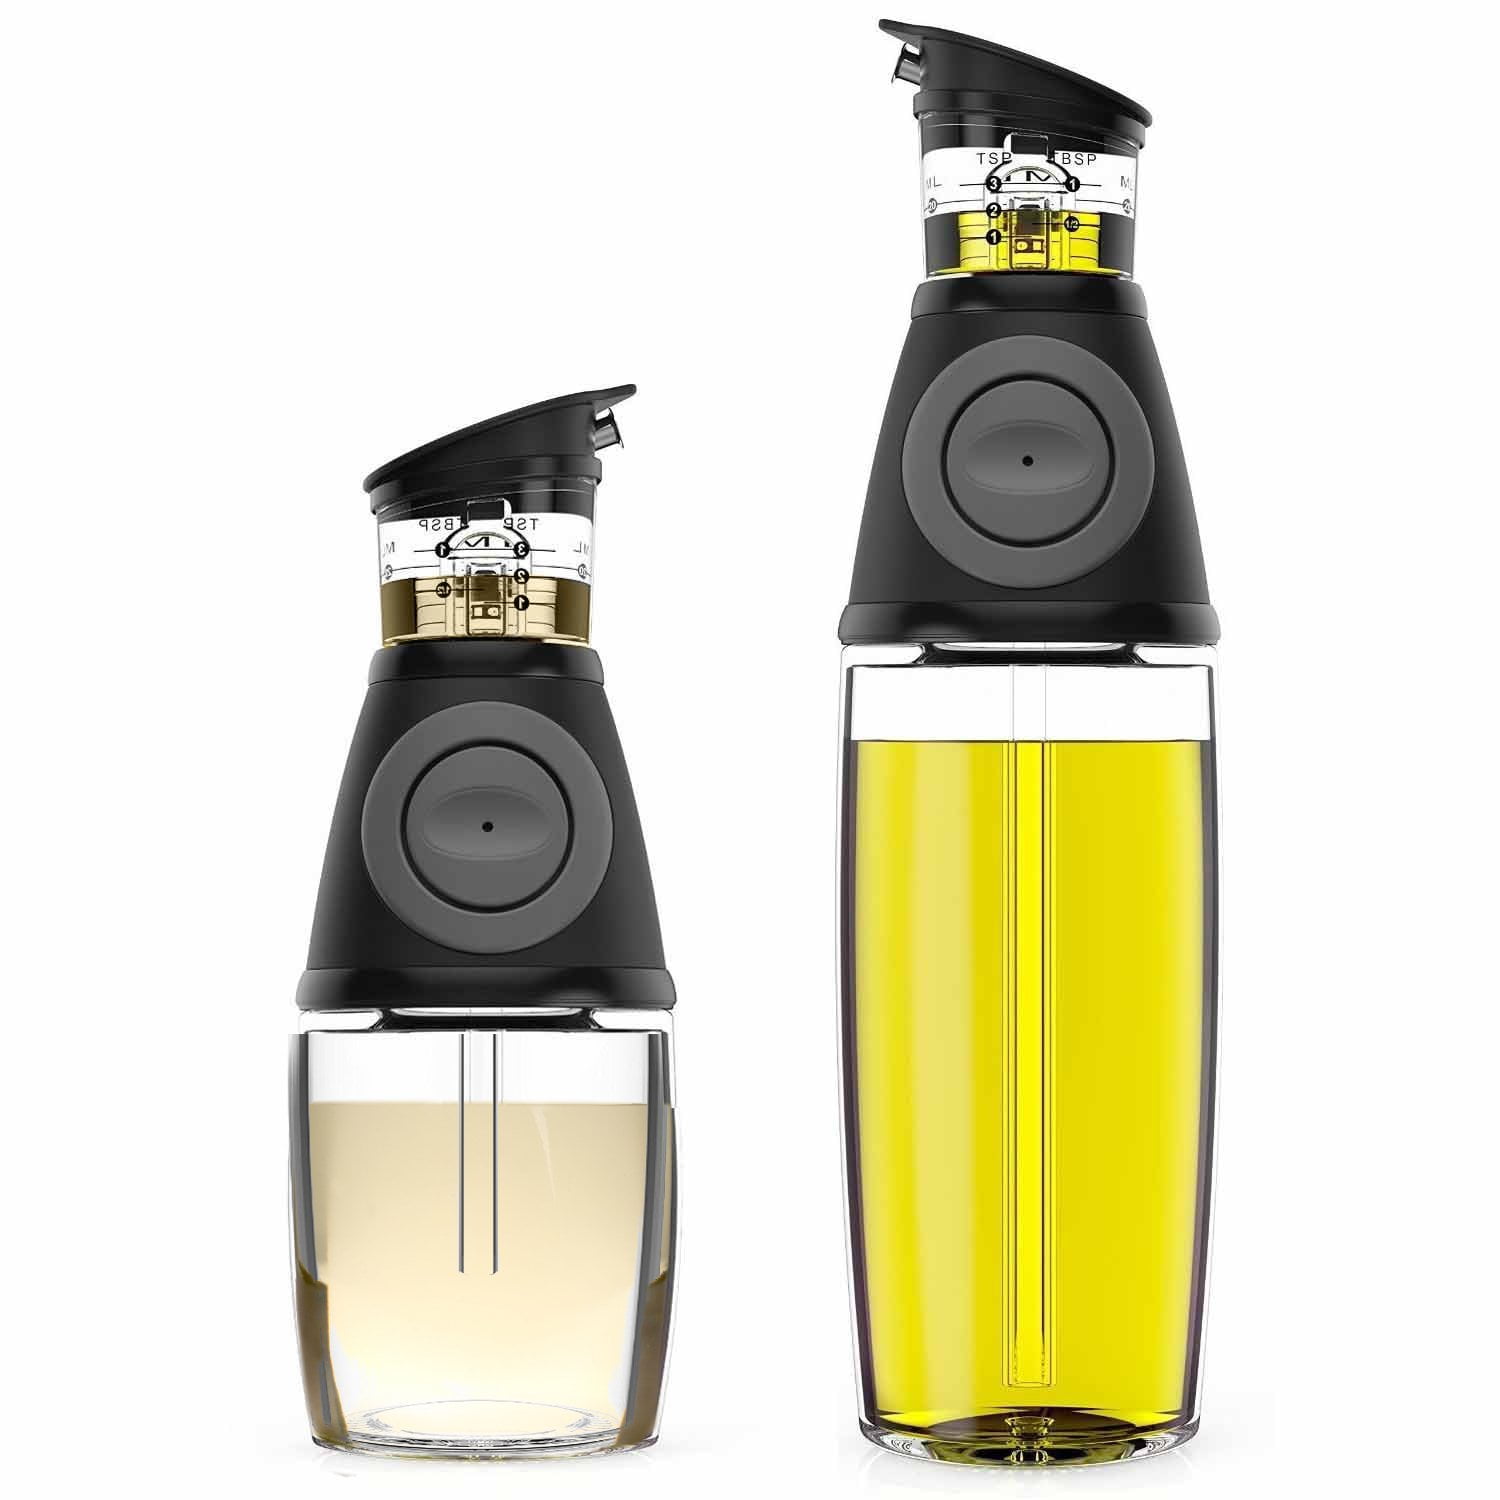 EHOMEA2Z Italian Glass Olive Oil Dispenser Bottle - 16 Oz, Oil and Vinegar  Cruet with Stainless Stee…See more EHOMEA2Z Italian Glass Olive Oil